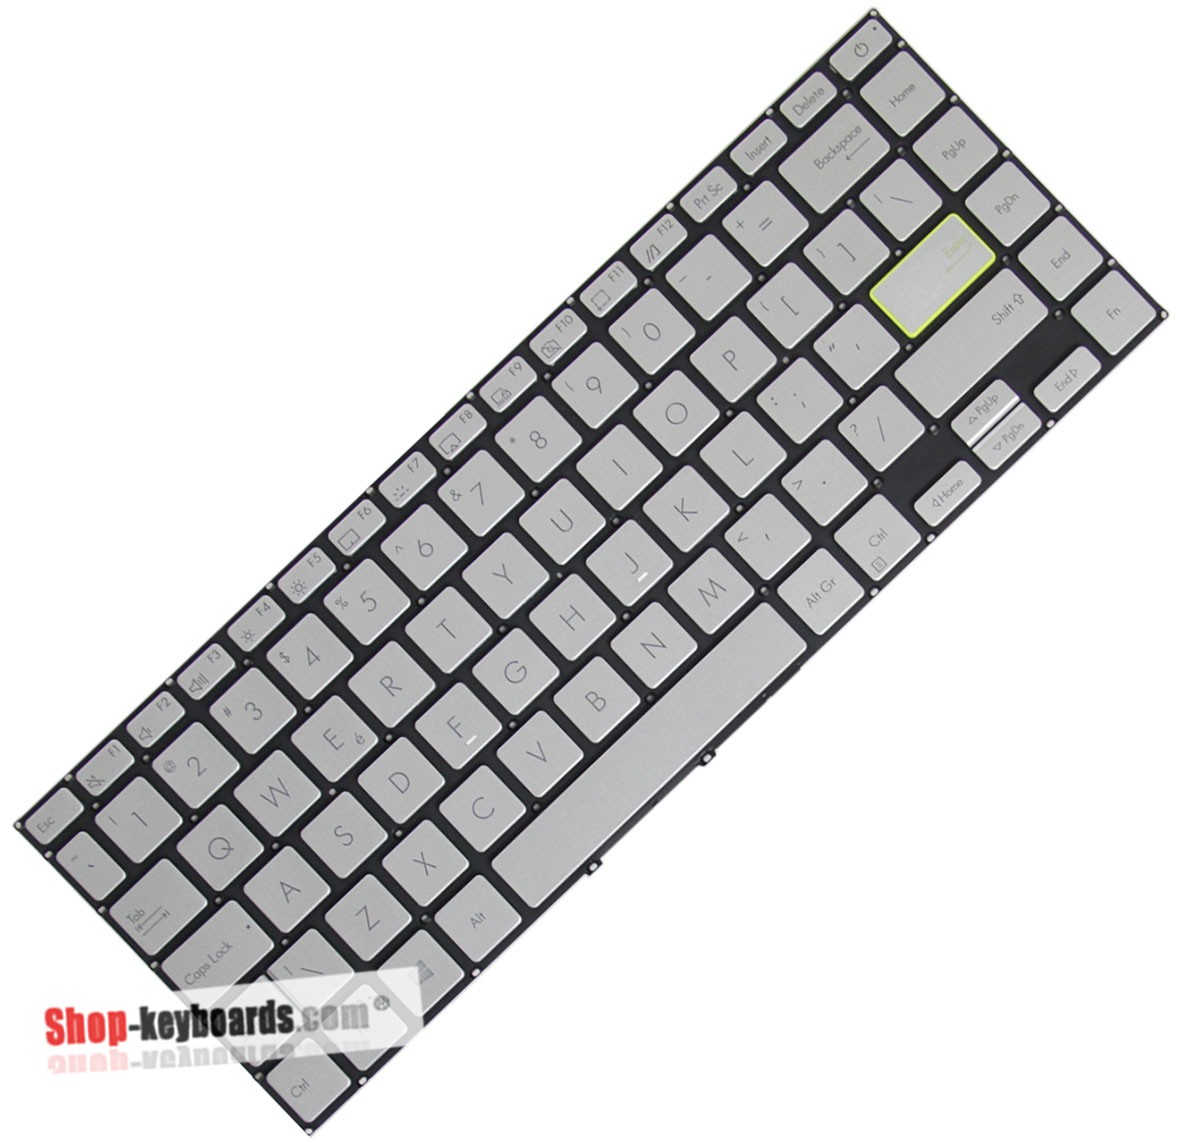 Asus AEXKSG01140 Keyboard replacement